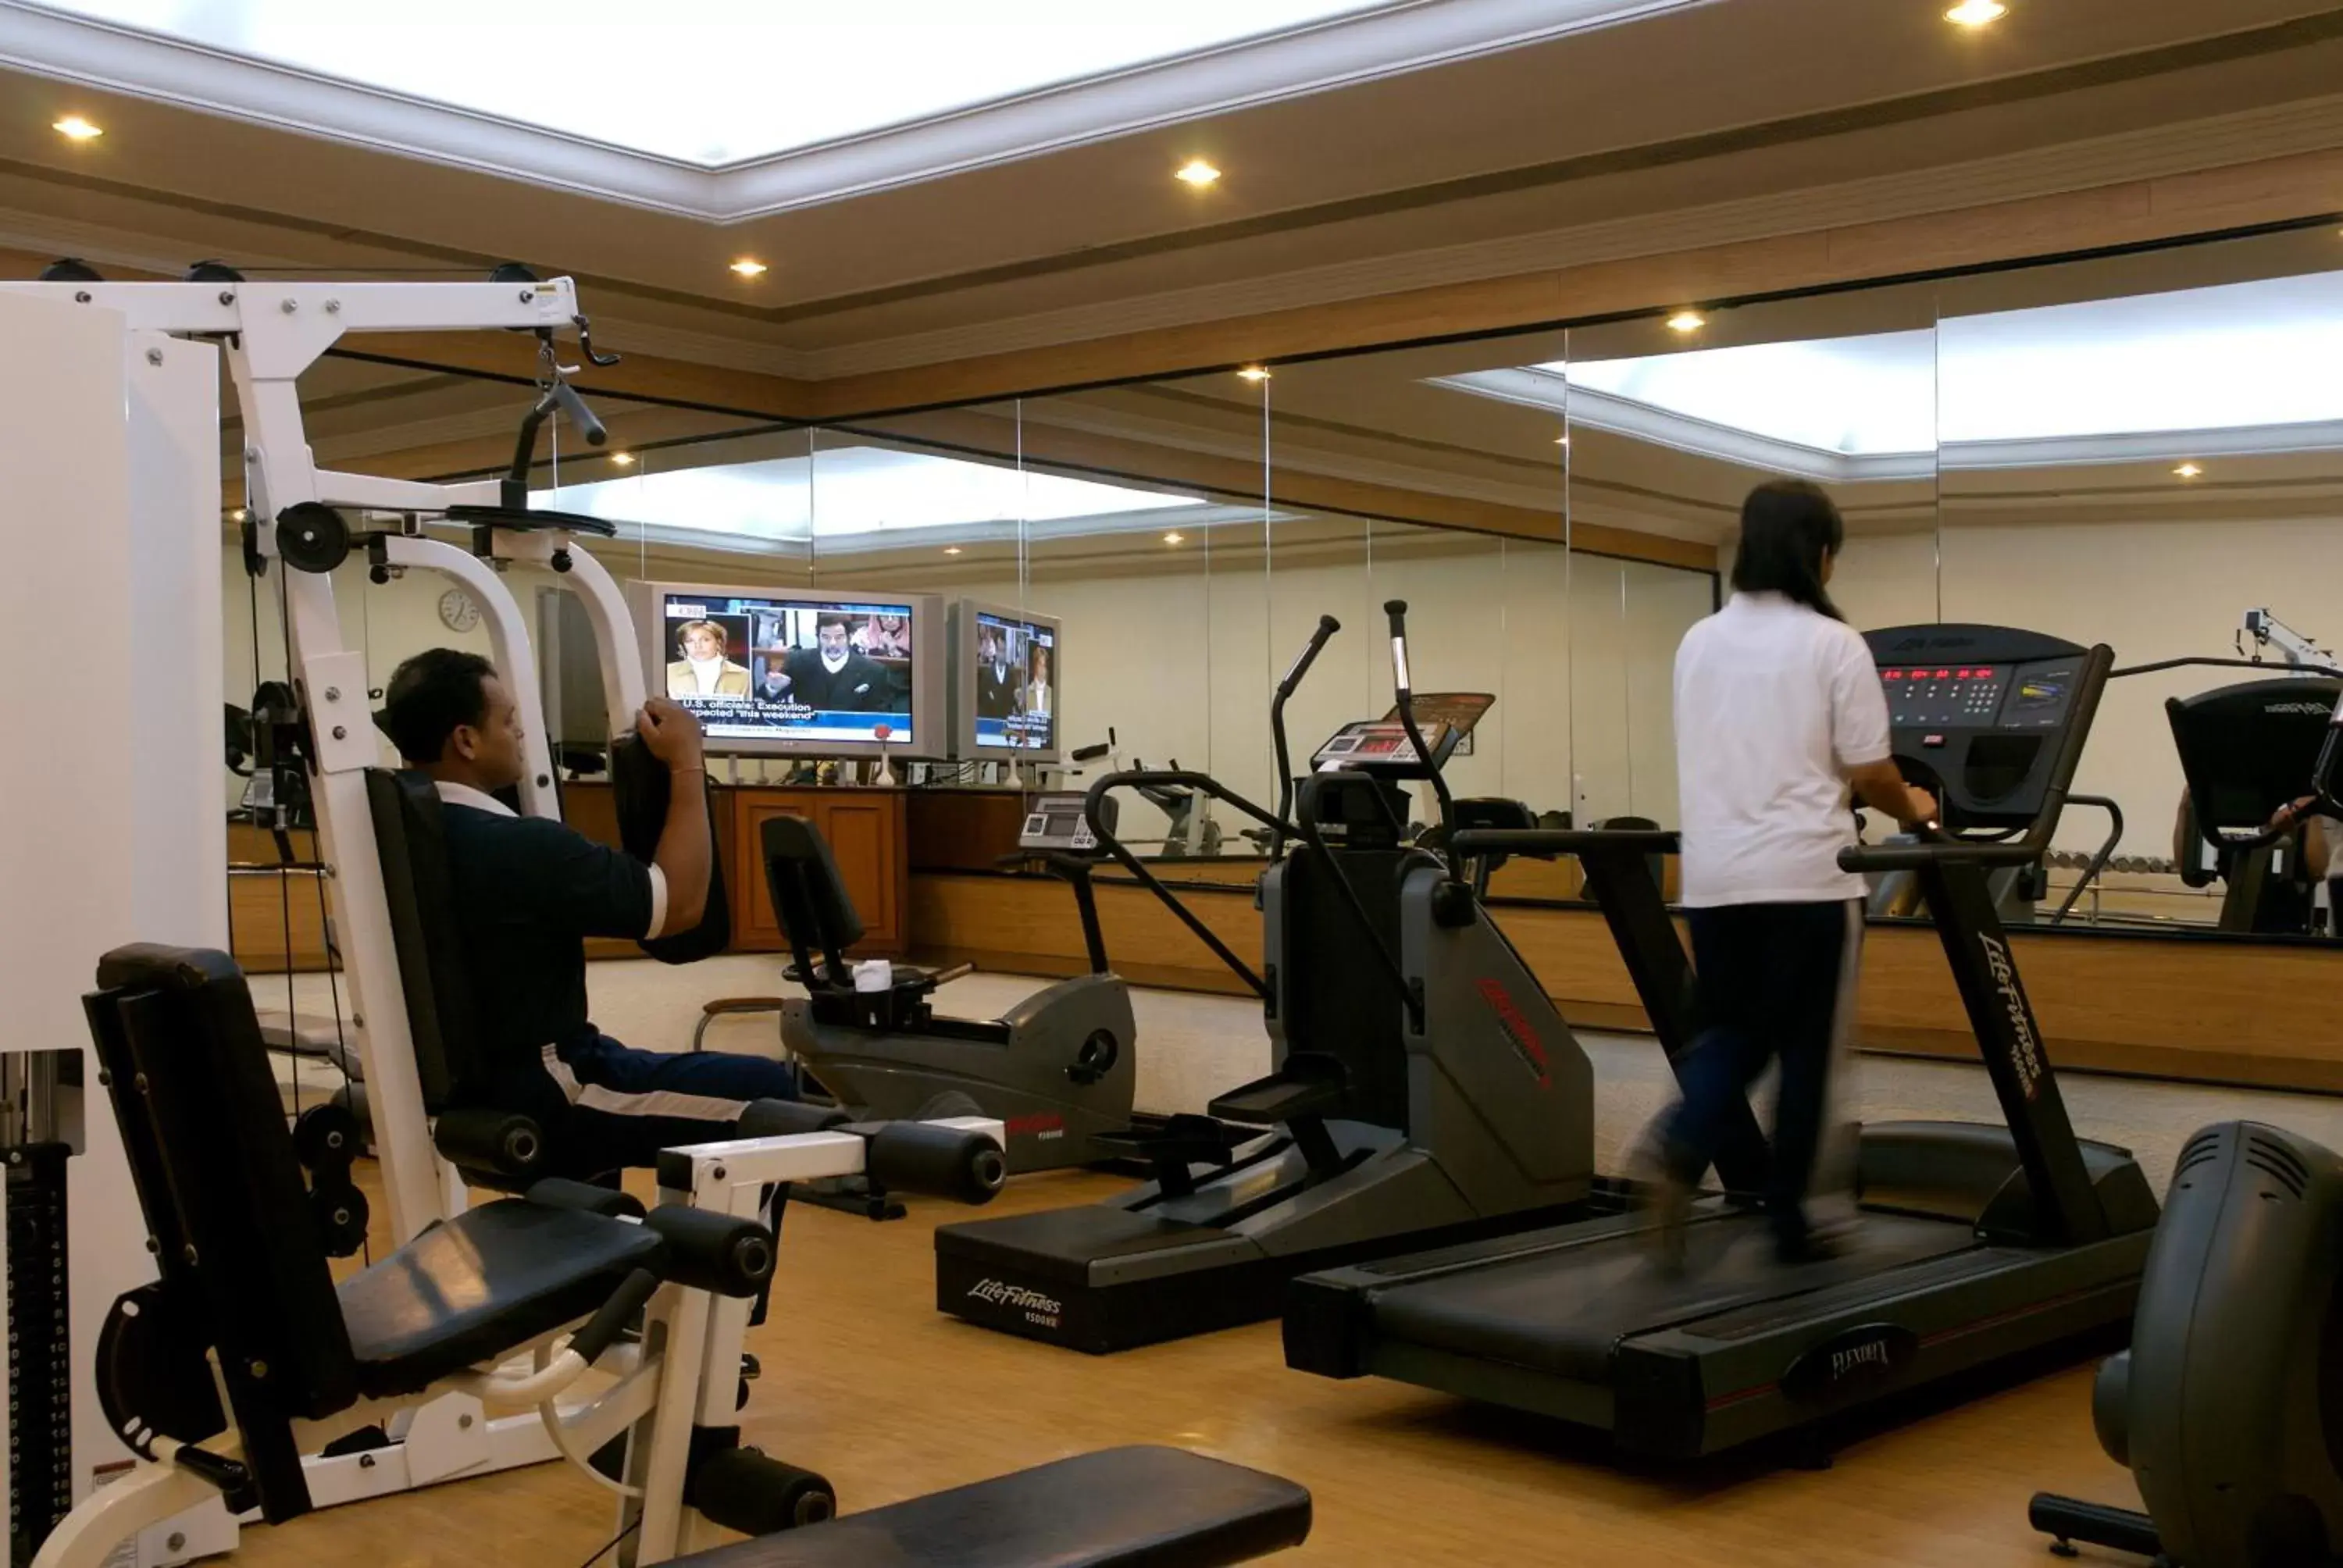 Fitness centre/facilities, Fitness Center/Facilities in Taj Deccan